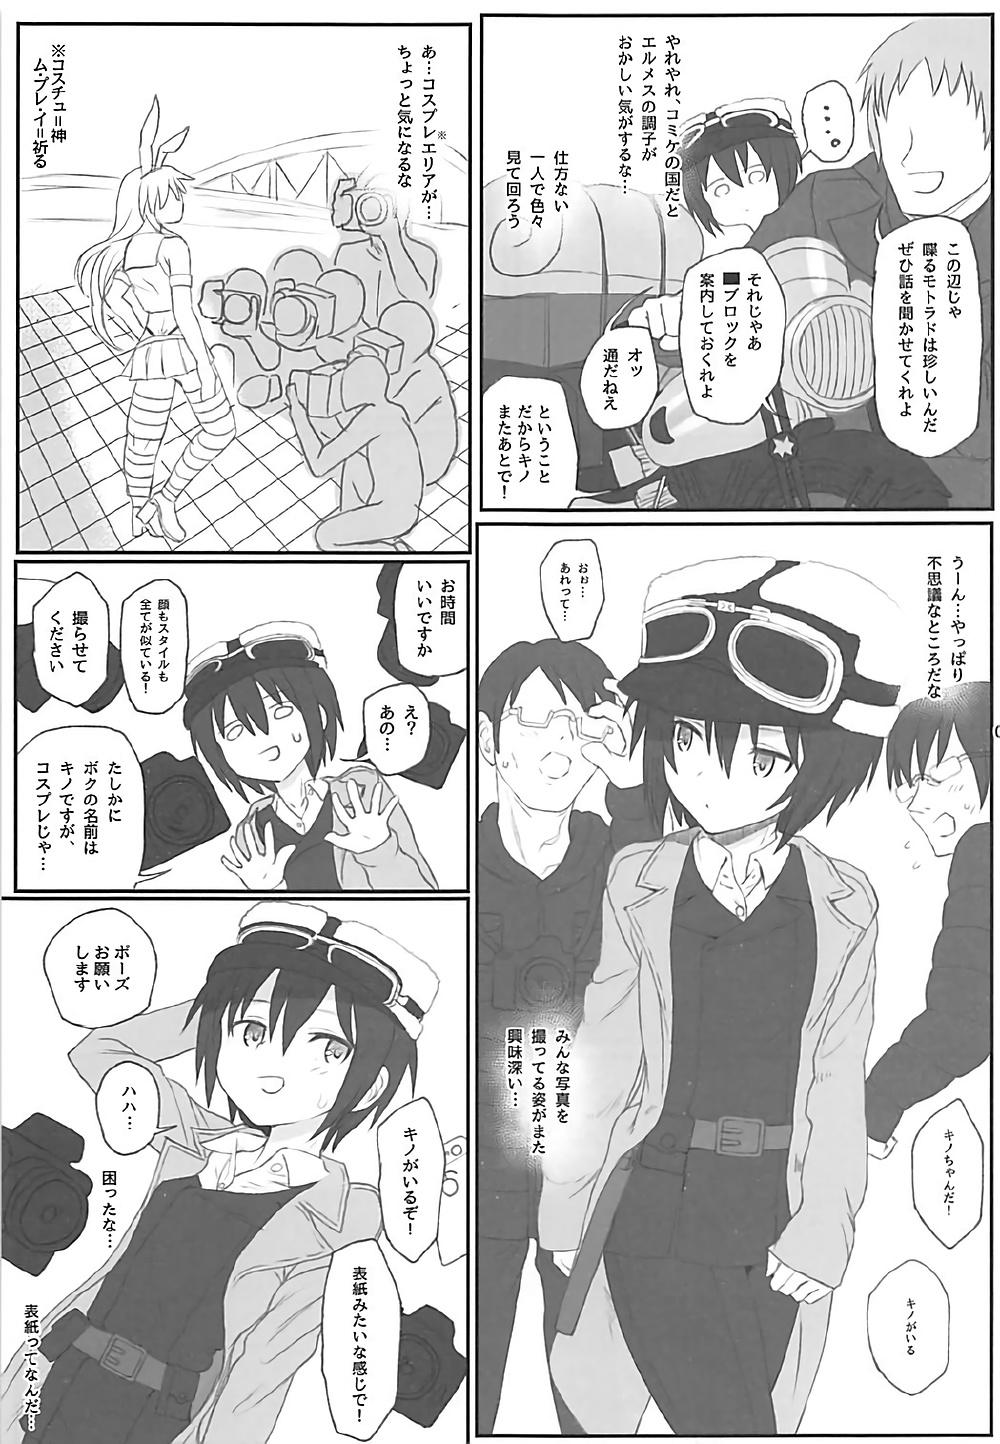 Gay Twinks Doujinshi no Kuni - Kino no tabi Goth - Page 2